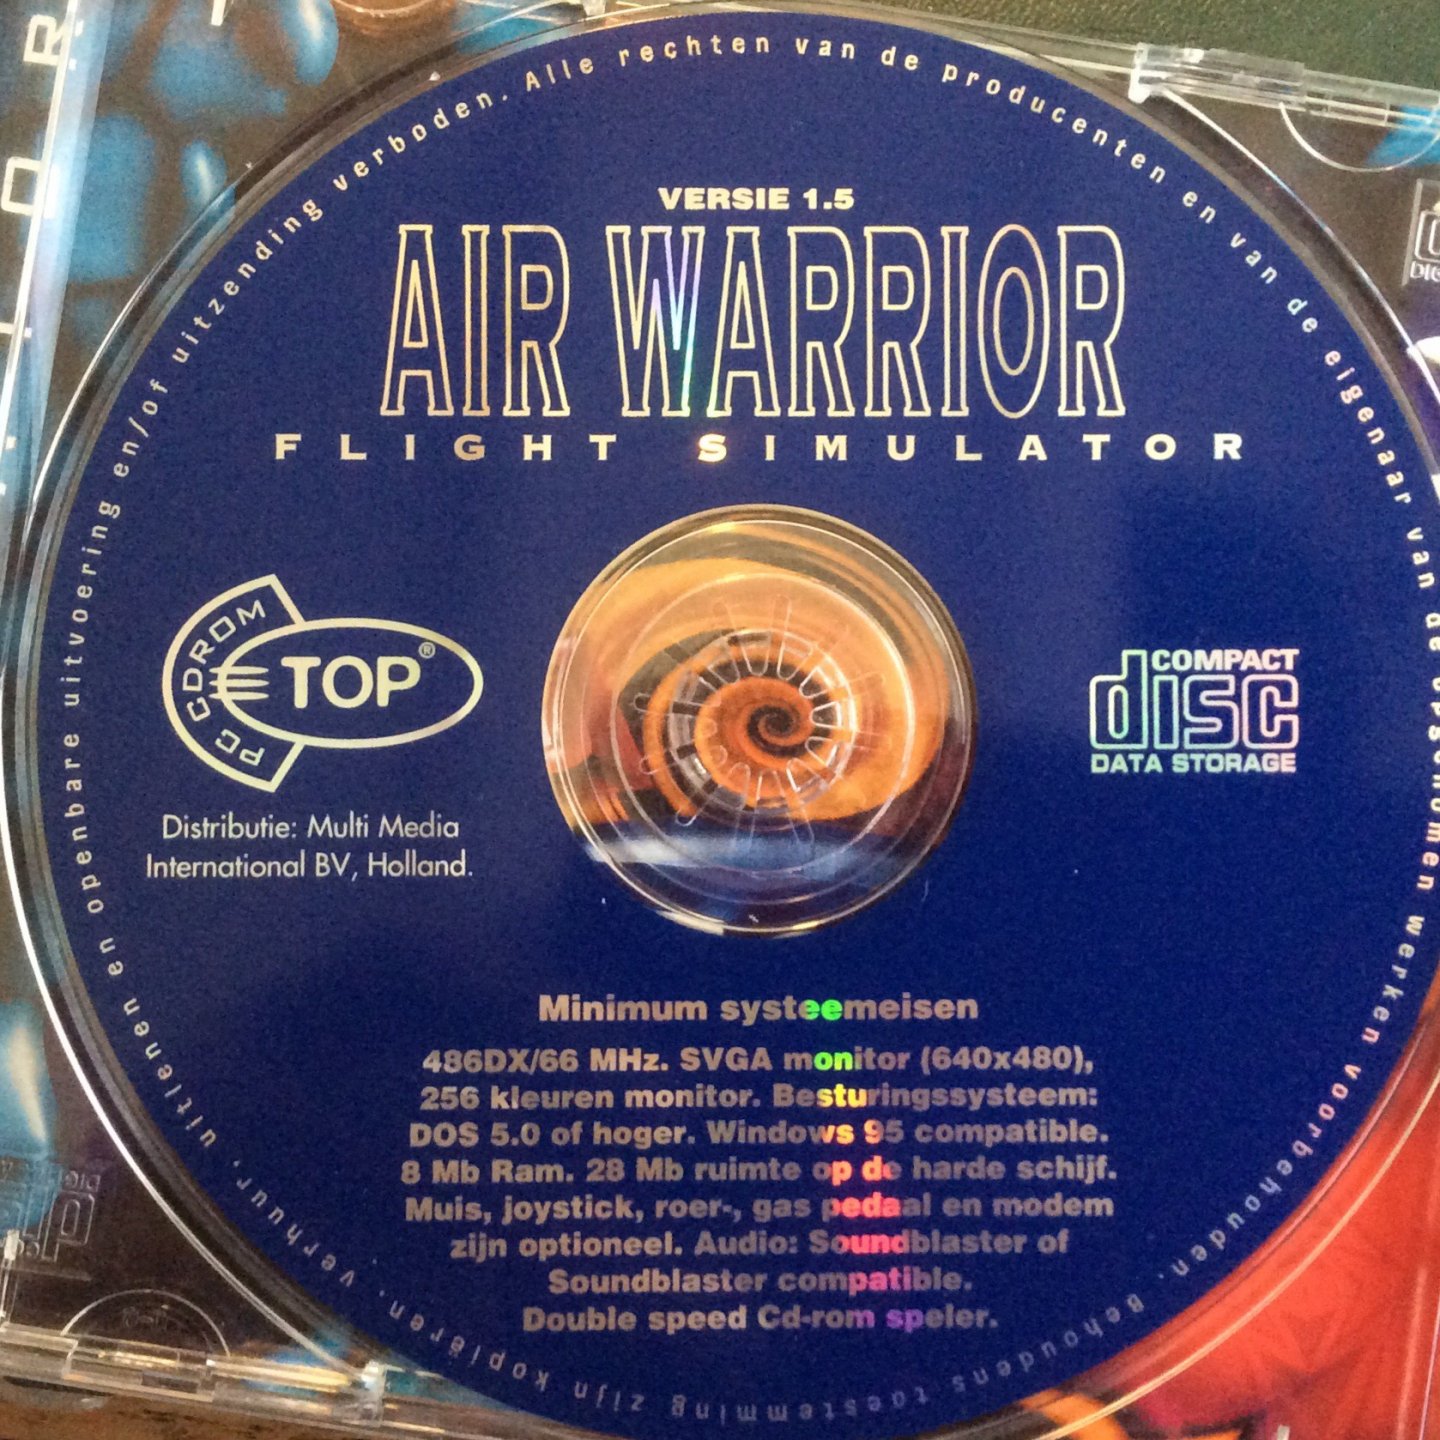 Wizard Works - Air Warrior V 1.5. Flight Simulator (Full version)